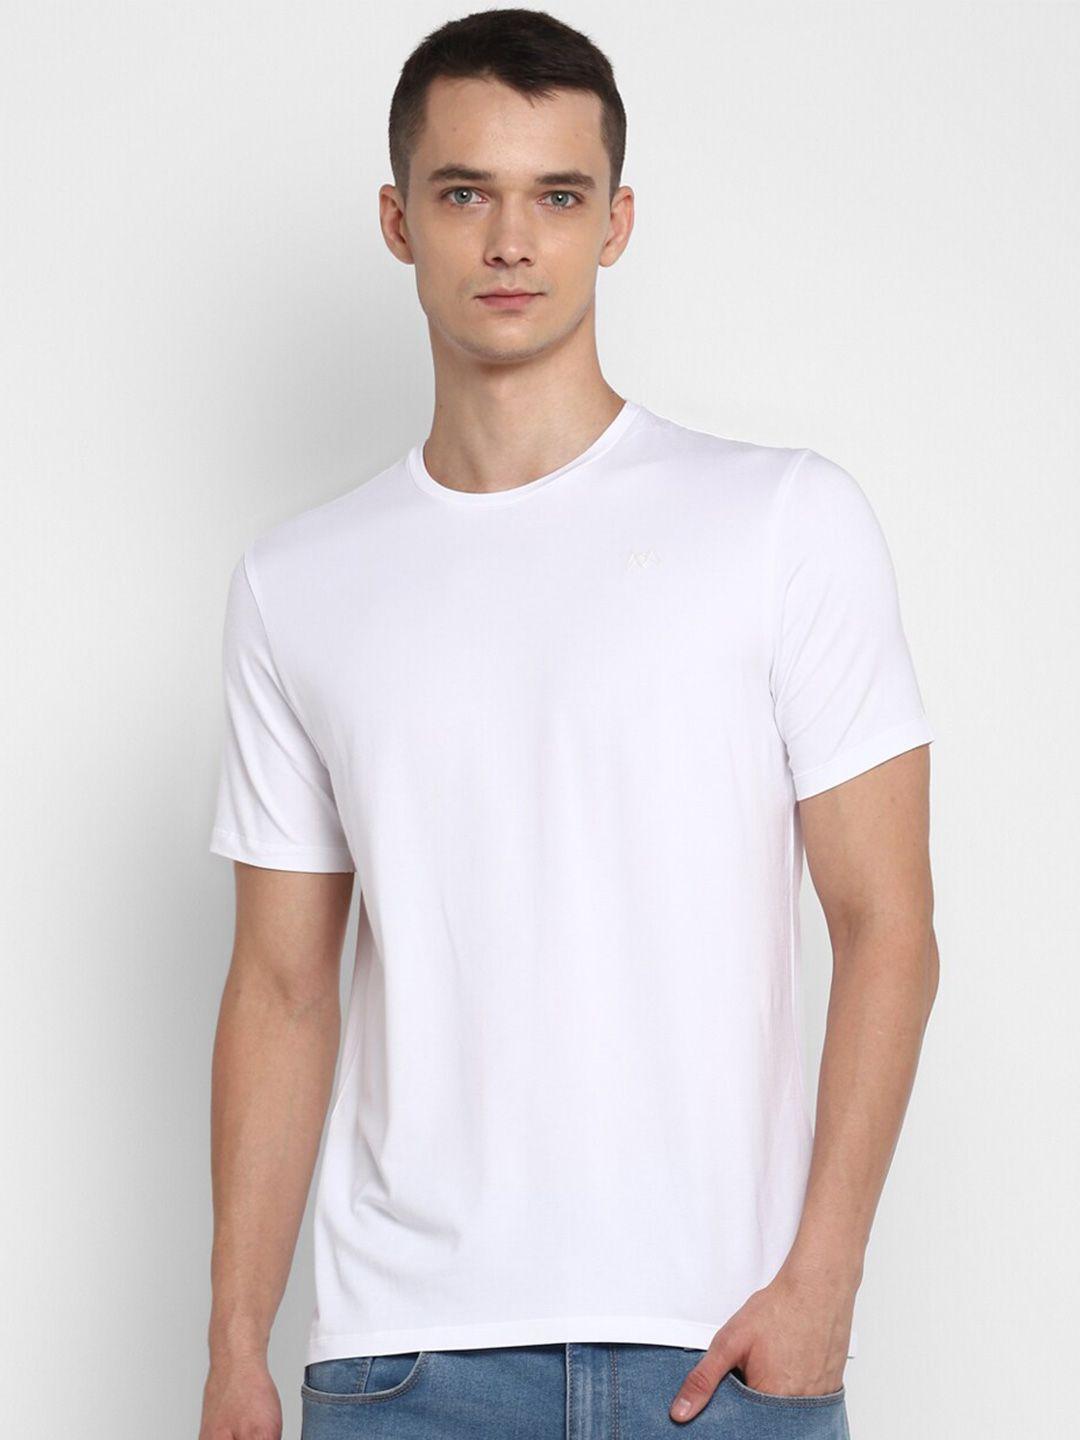 muwin men white t-shirt